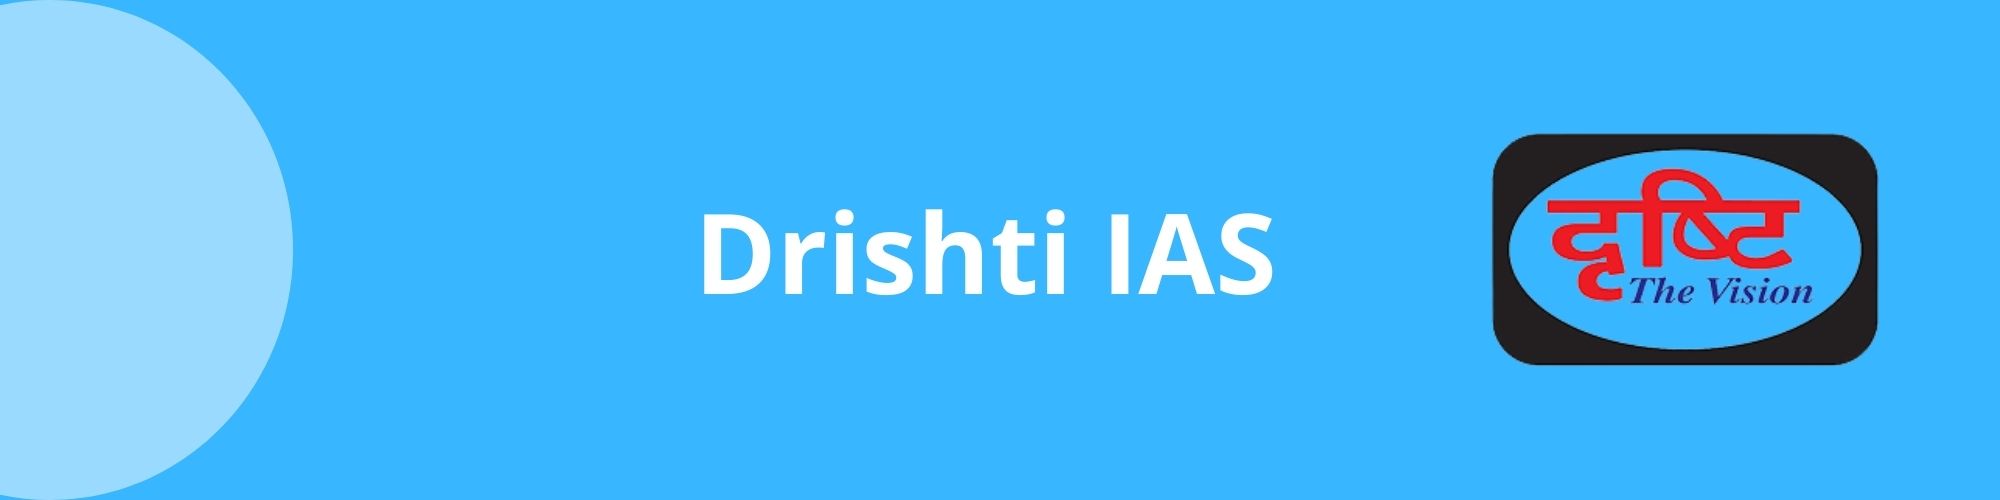 Drishti IAS- Best IAS Coaching in Delhi